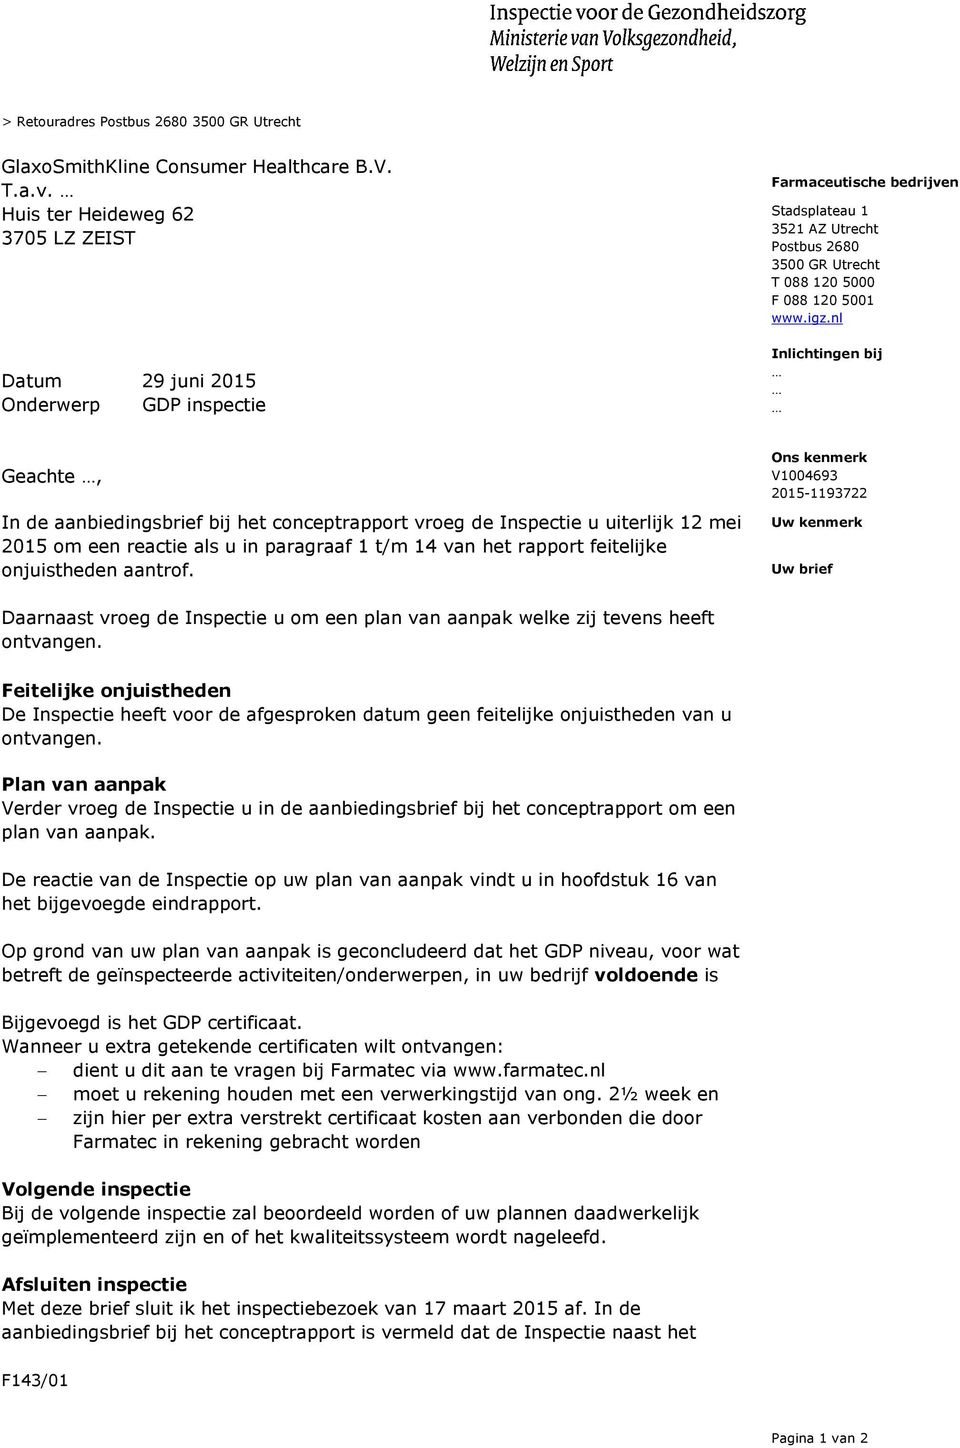 igz.nl Inlichtingen bij Geachte, In de aanbiedingsbrief bij het conceptrapport vroeg de Inspectie u uiterlijk 12 mei 2015 om een reactie als u in paragraaf 1 t/m 14 van het rapport feitelijke